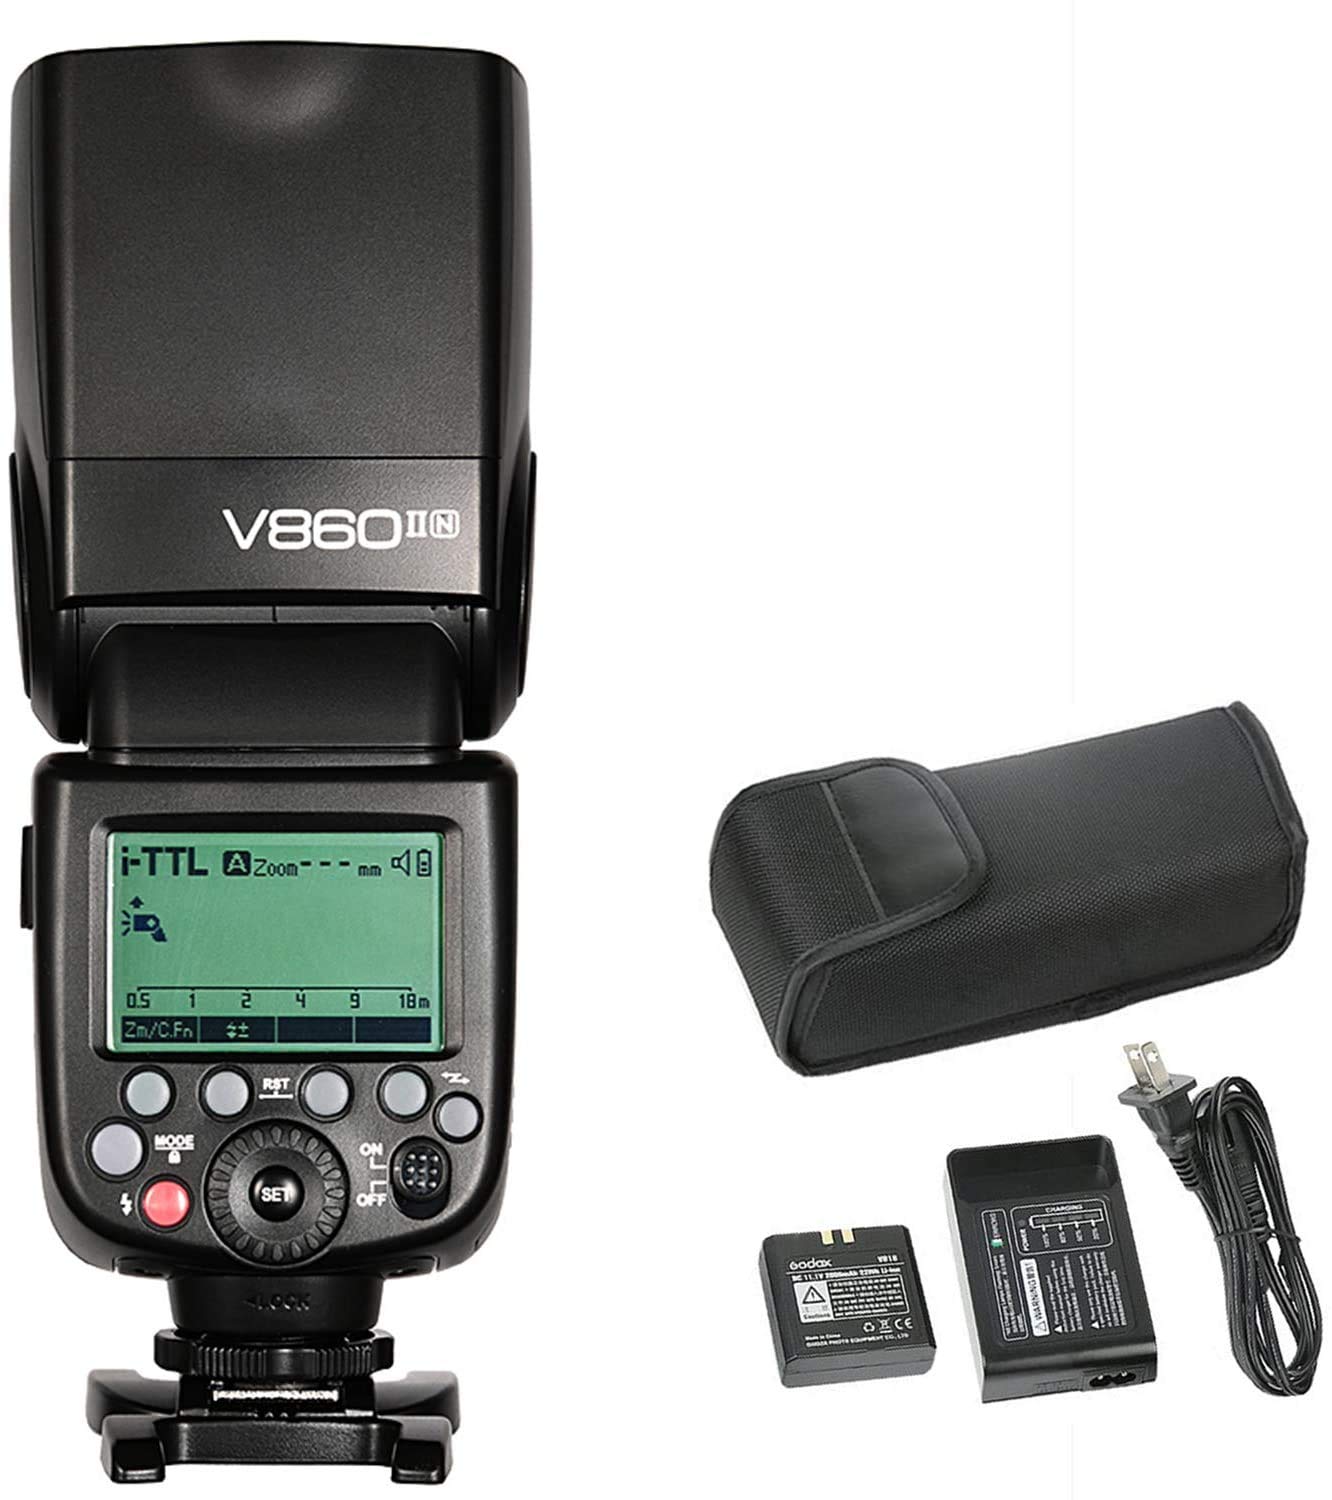 GODOX V860II-N KIT Blitz Speedlite für Nikon DSLR-Kamera (Wireless-X-System-Blitzlicht, LCD-Display) schwarz FBA_V860II-N KIT, Black